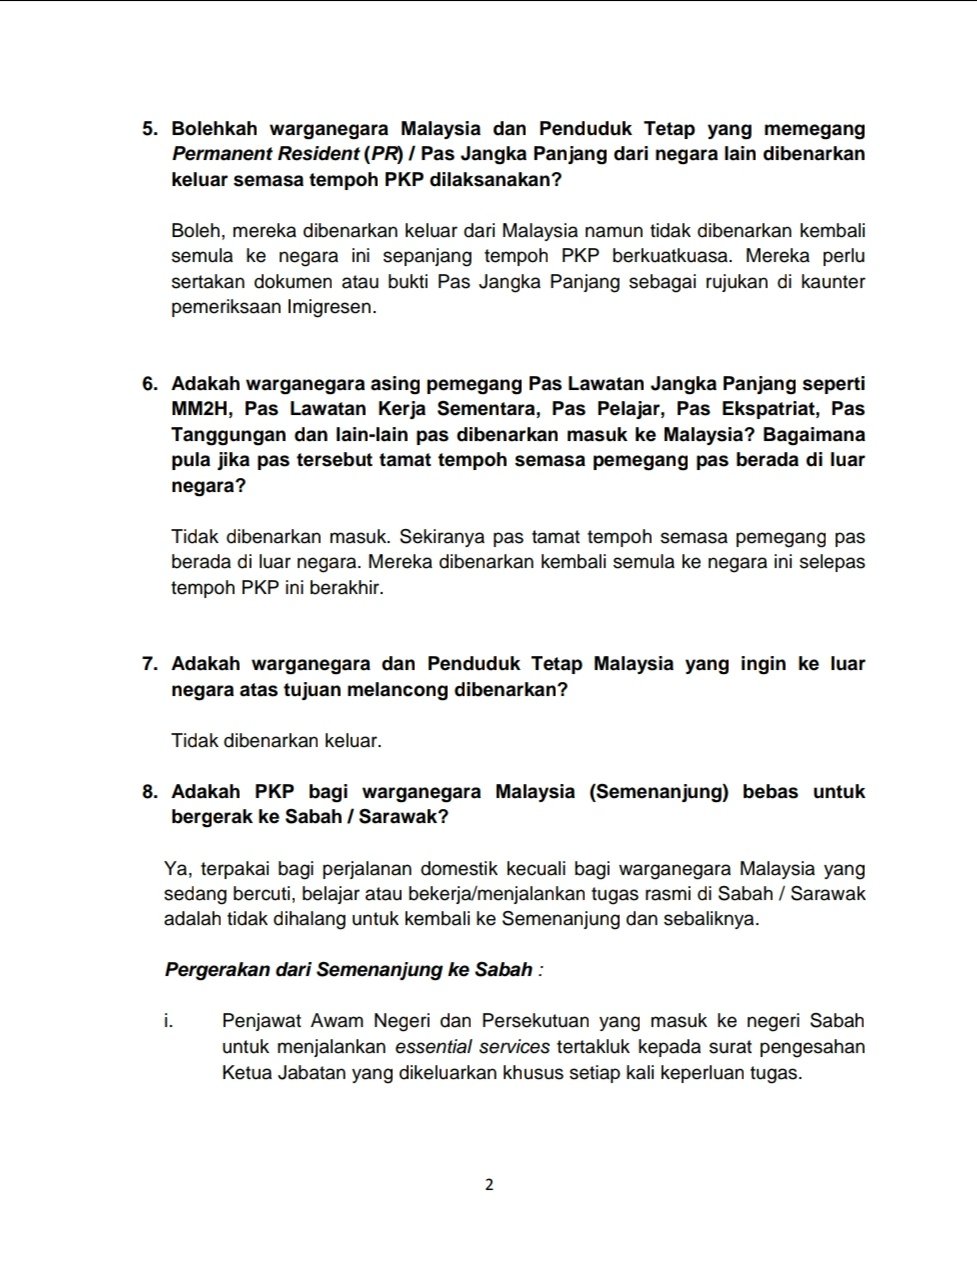 Imigresen Malaysia A Twitter Soalan Soalan Lazim Faqs Berkaitan Perintah Kawalan Pergerakan Pkp Jabatan Imigresen Malaysia Jim Dikemaskini Pada 20 Mac 2020 Https T Co Nafkaruxno Telegram Jabatan Imigresen Malaysia Https T Co Gaz77j7wiw